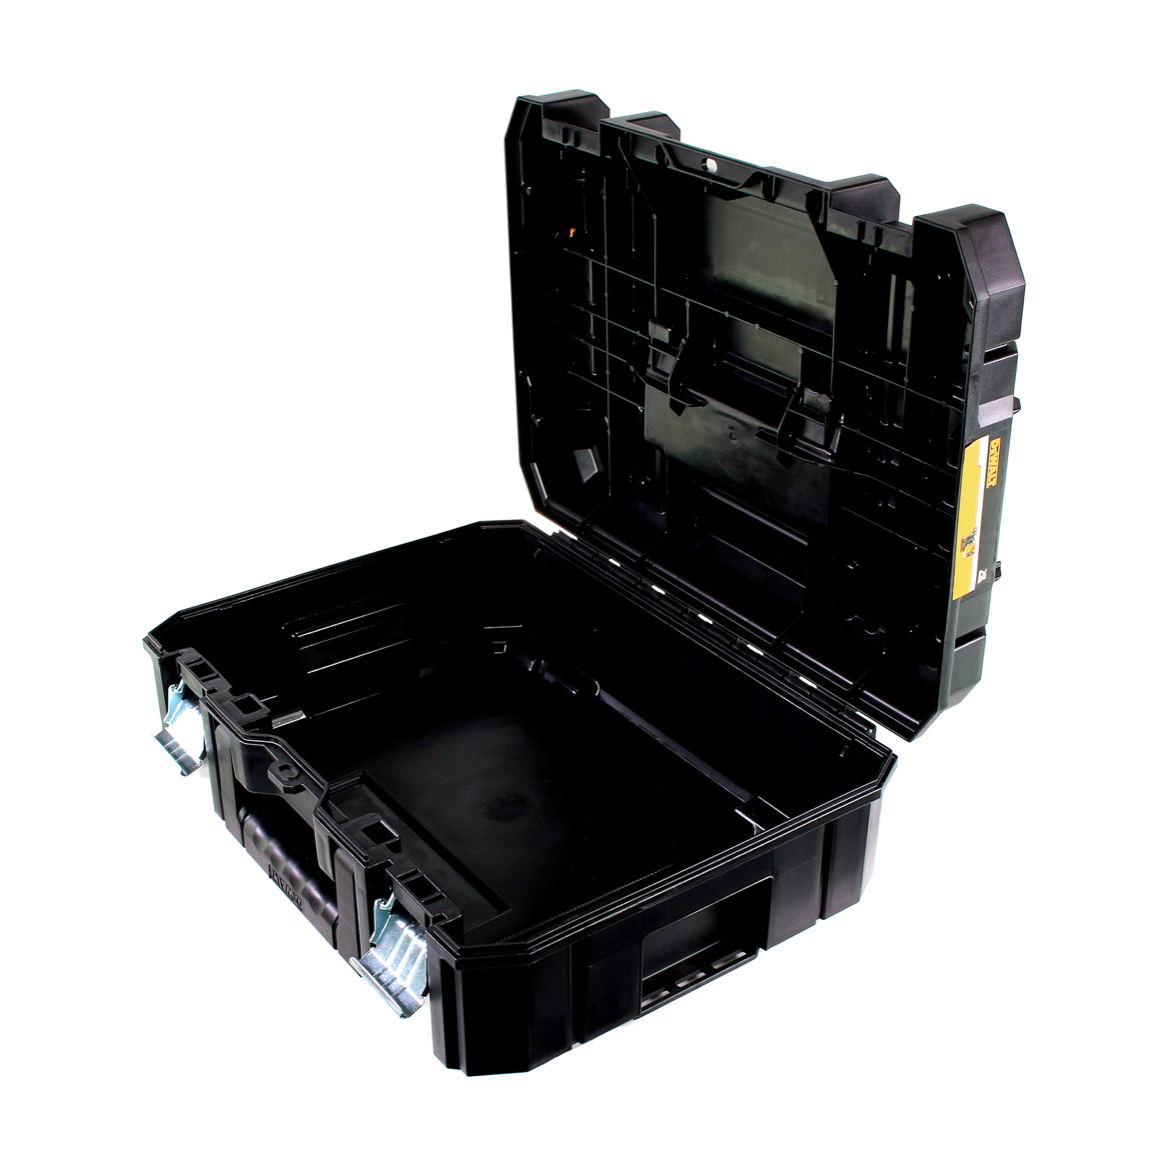 DeWalt TSTAK Box II DWST1-70703 Werkzeug Box / Koffer Transportbox - Toolbrothers